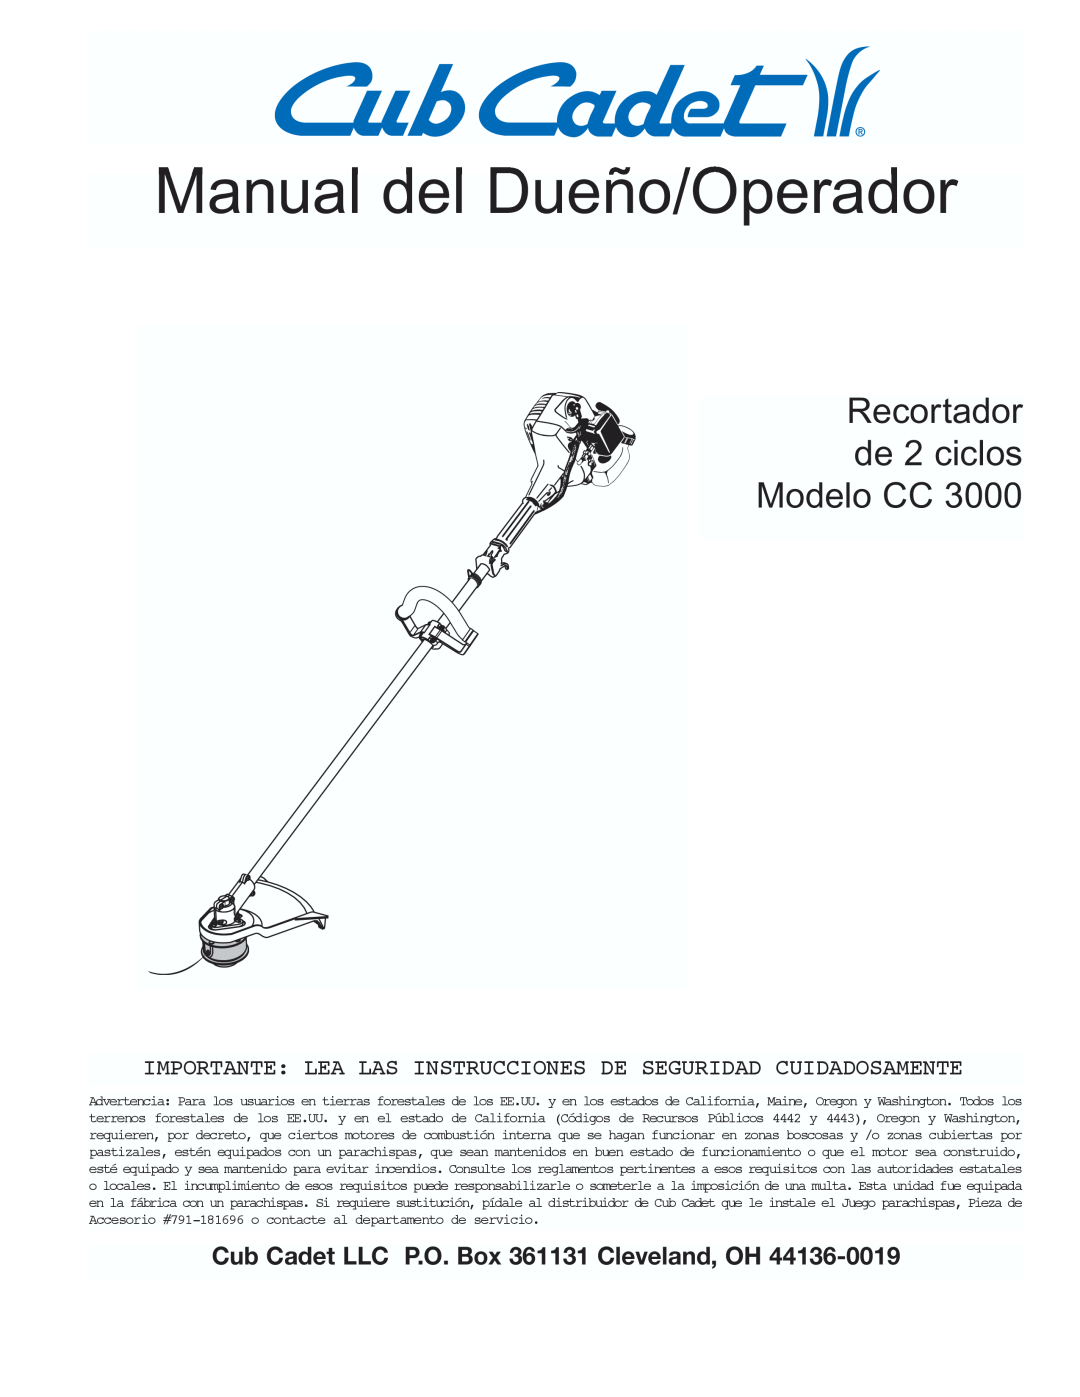 Cub Cadet CC3000 Manual del Dueño/Operador, Recortador de 2 ciclos Modelo CC, Cub Cadet LLC P.O. Box 361131 Cleveland, OH 